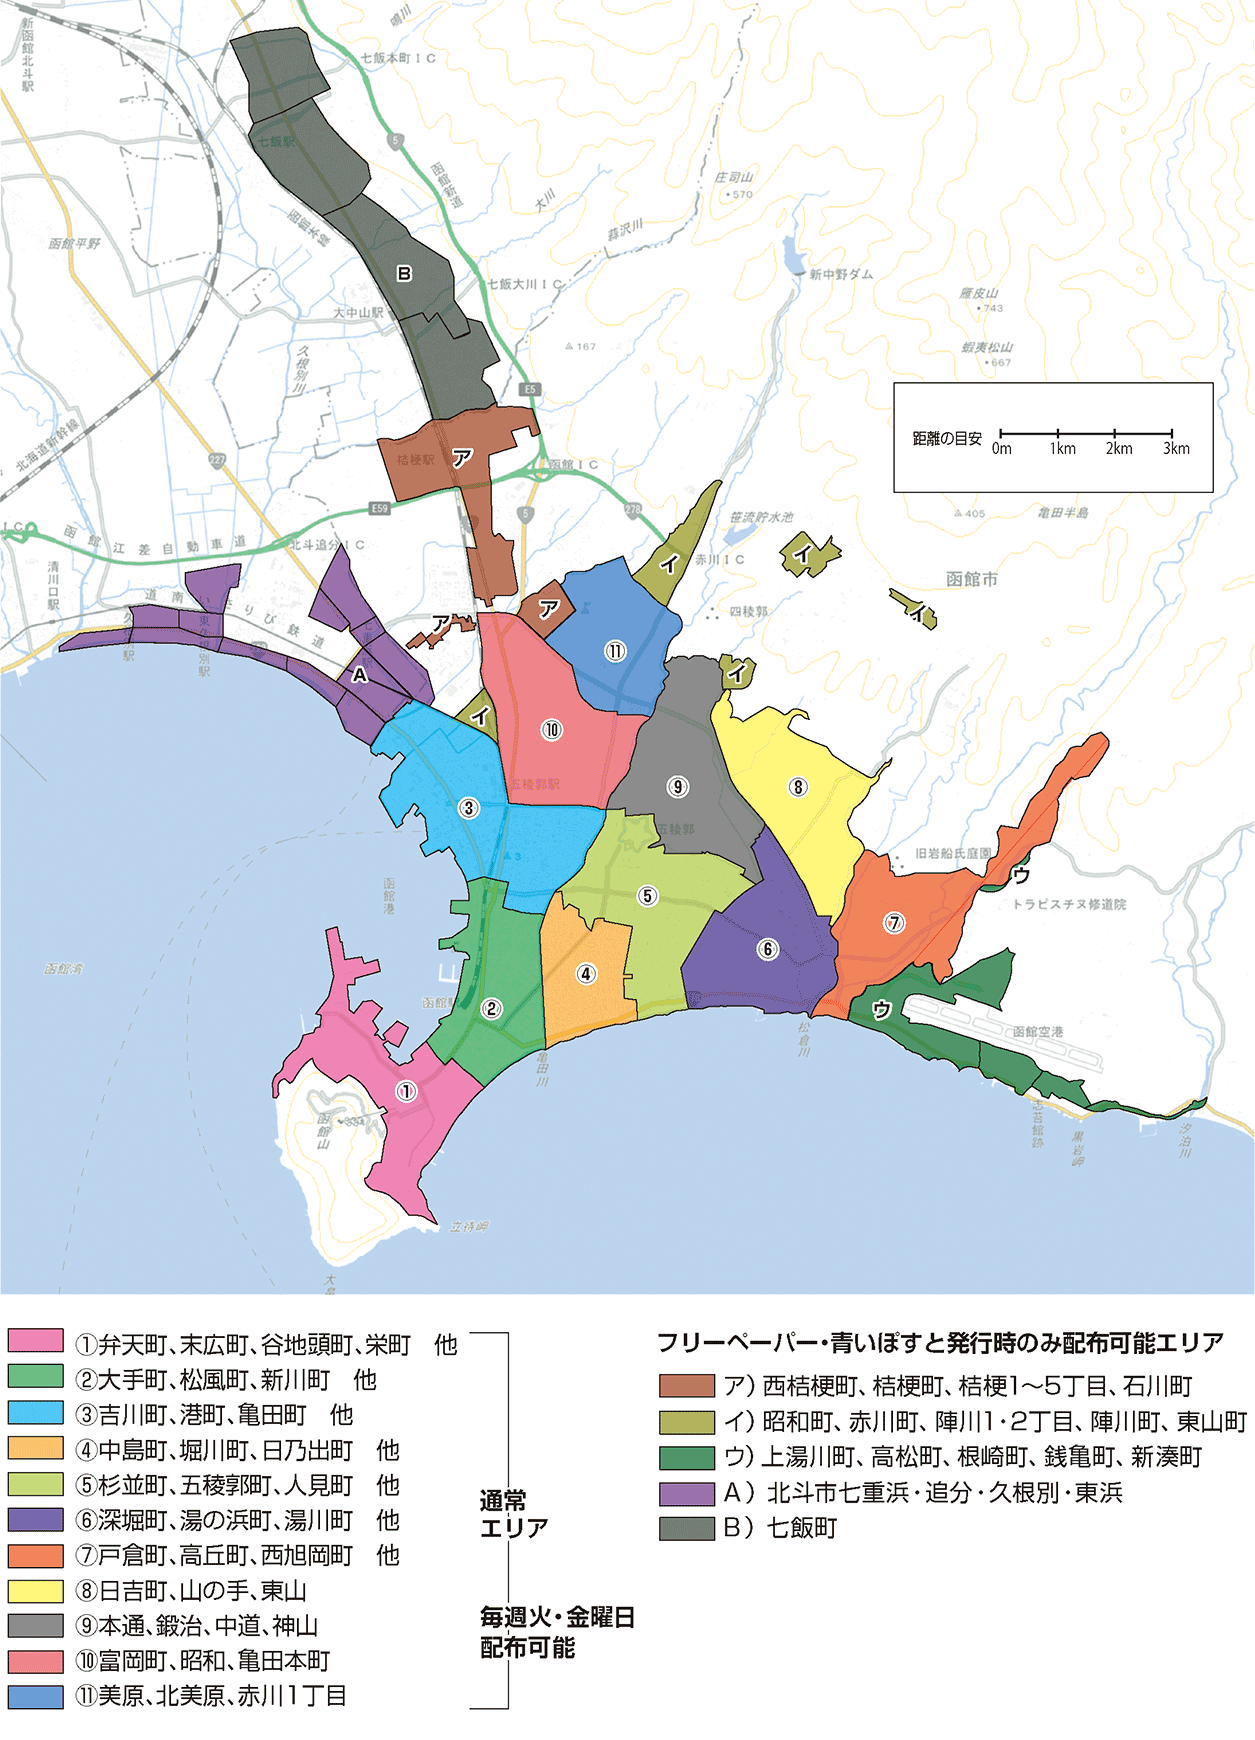 『青いぽすと』の函館配布エリア地図